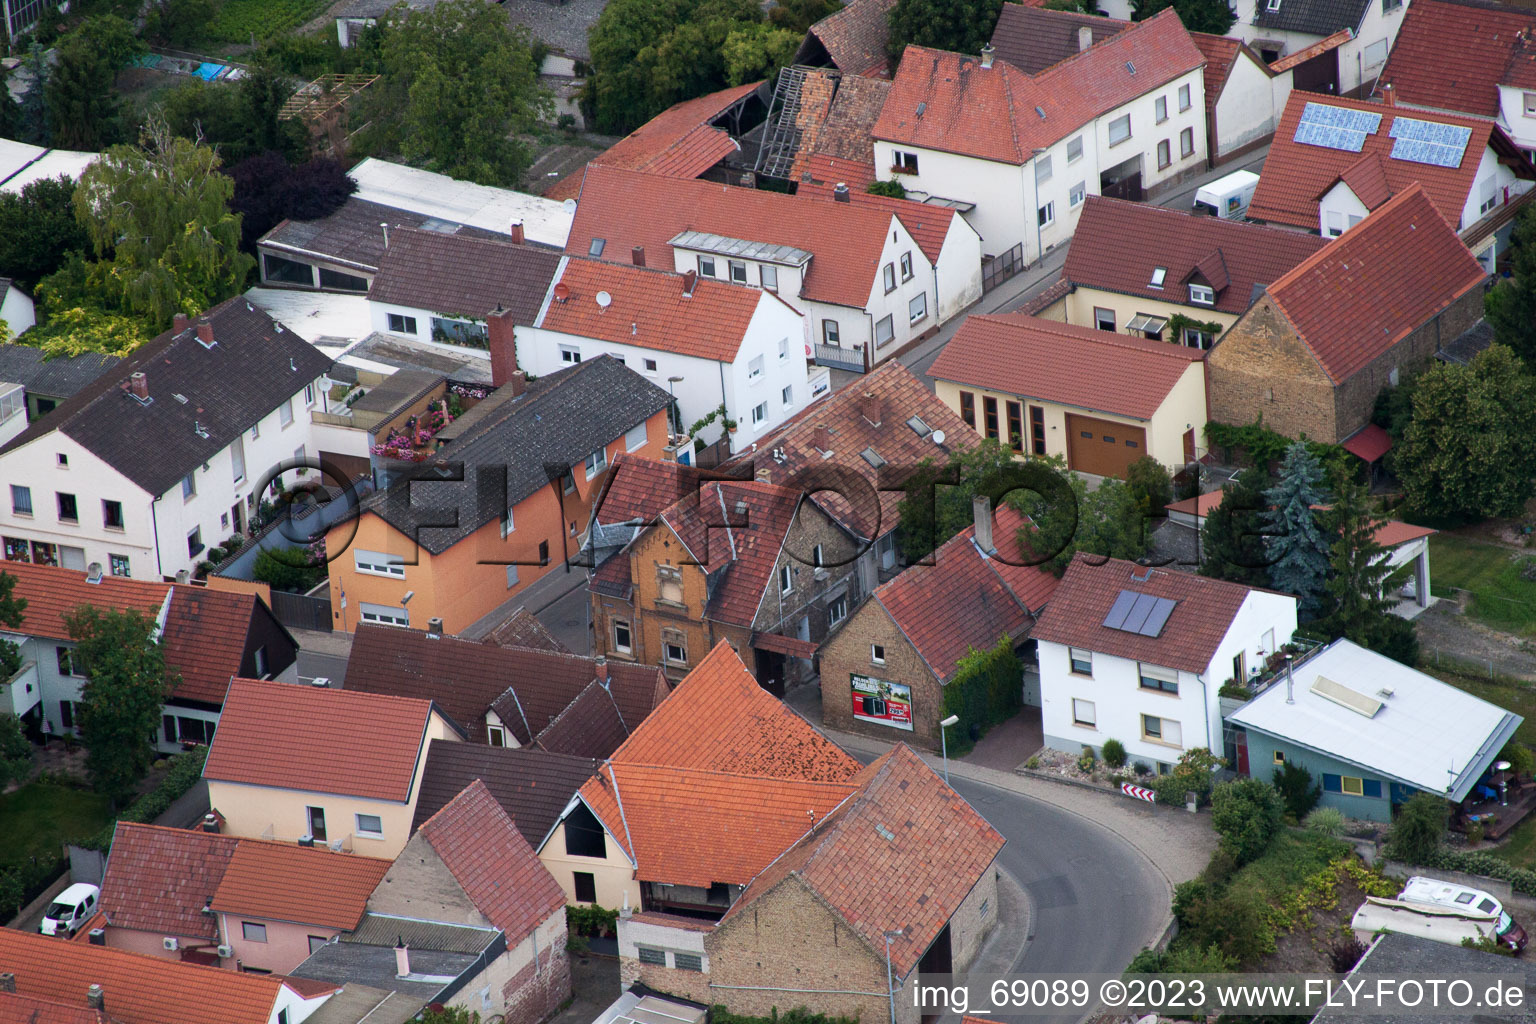 Quartier Bobenheim in Bobenheim-Roxheim dans le département Rhénanie-Palatinat, Allemagne hors des airs